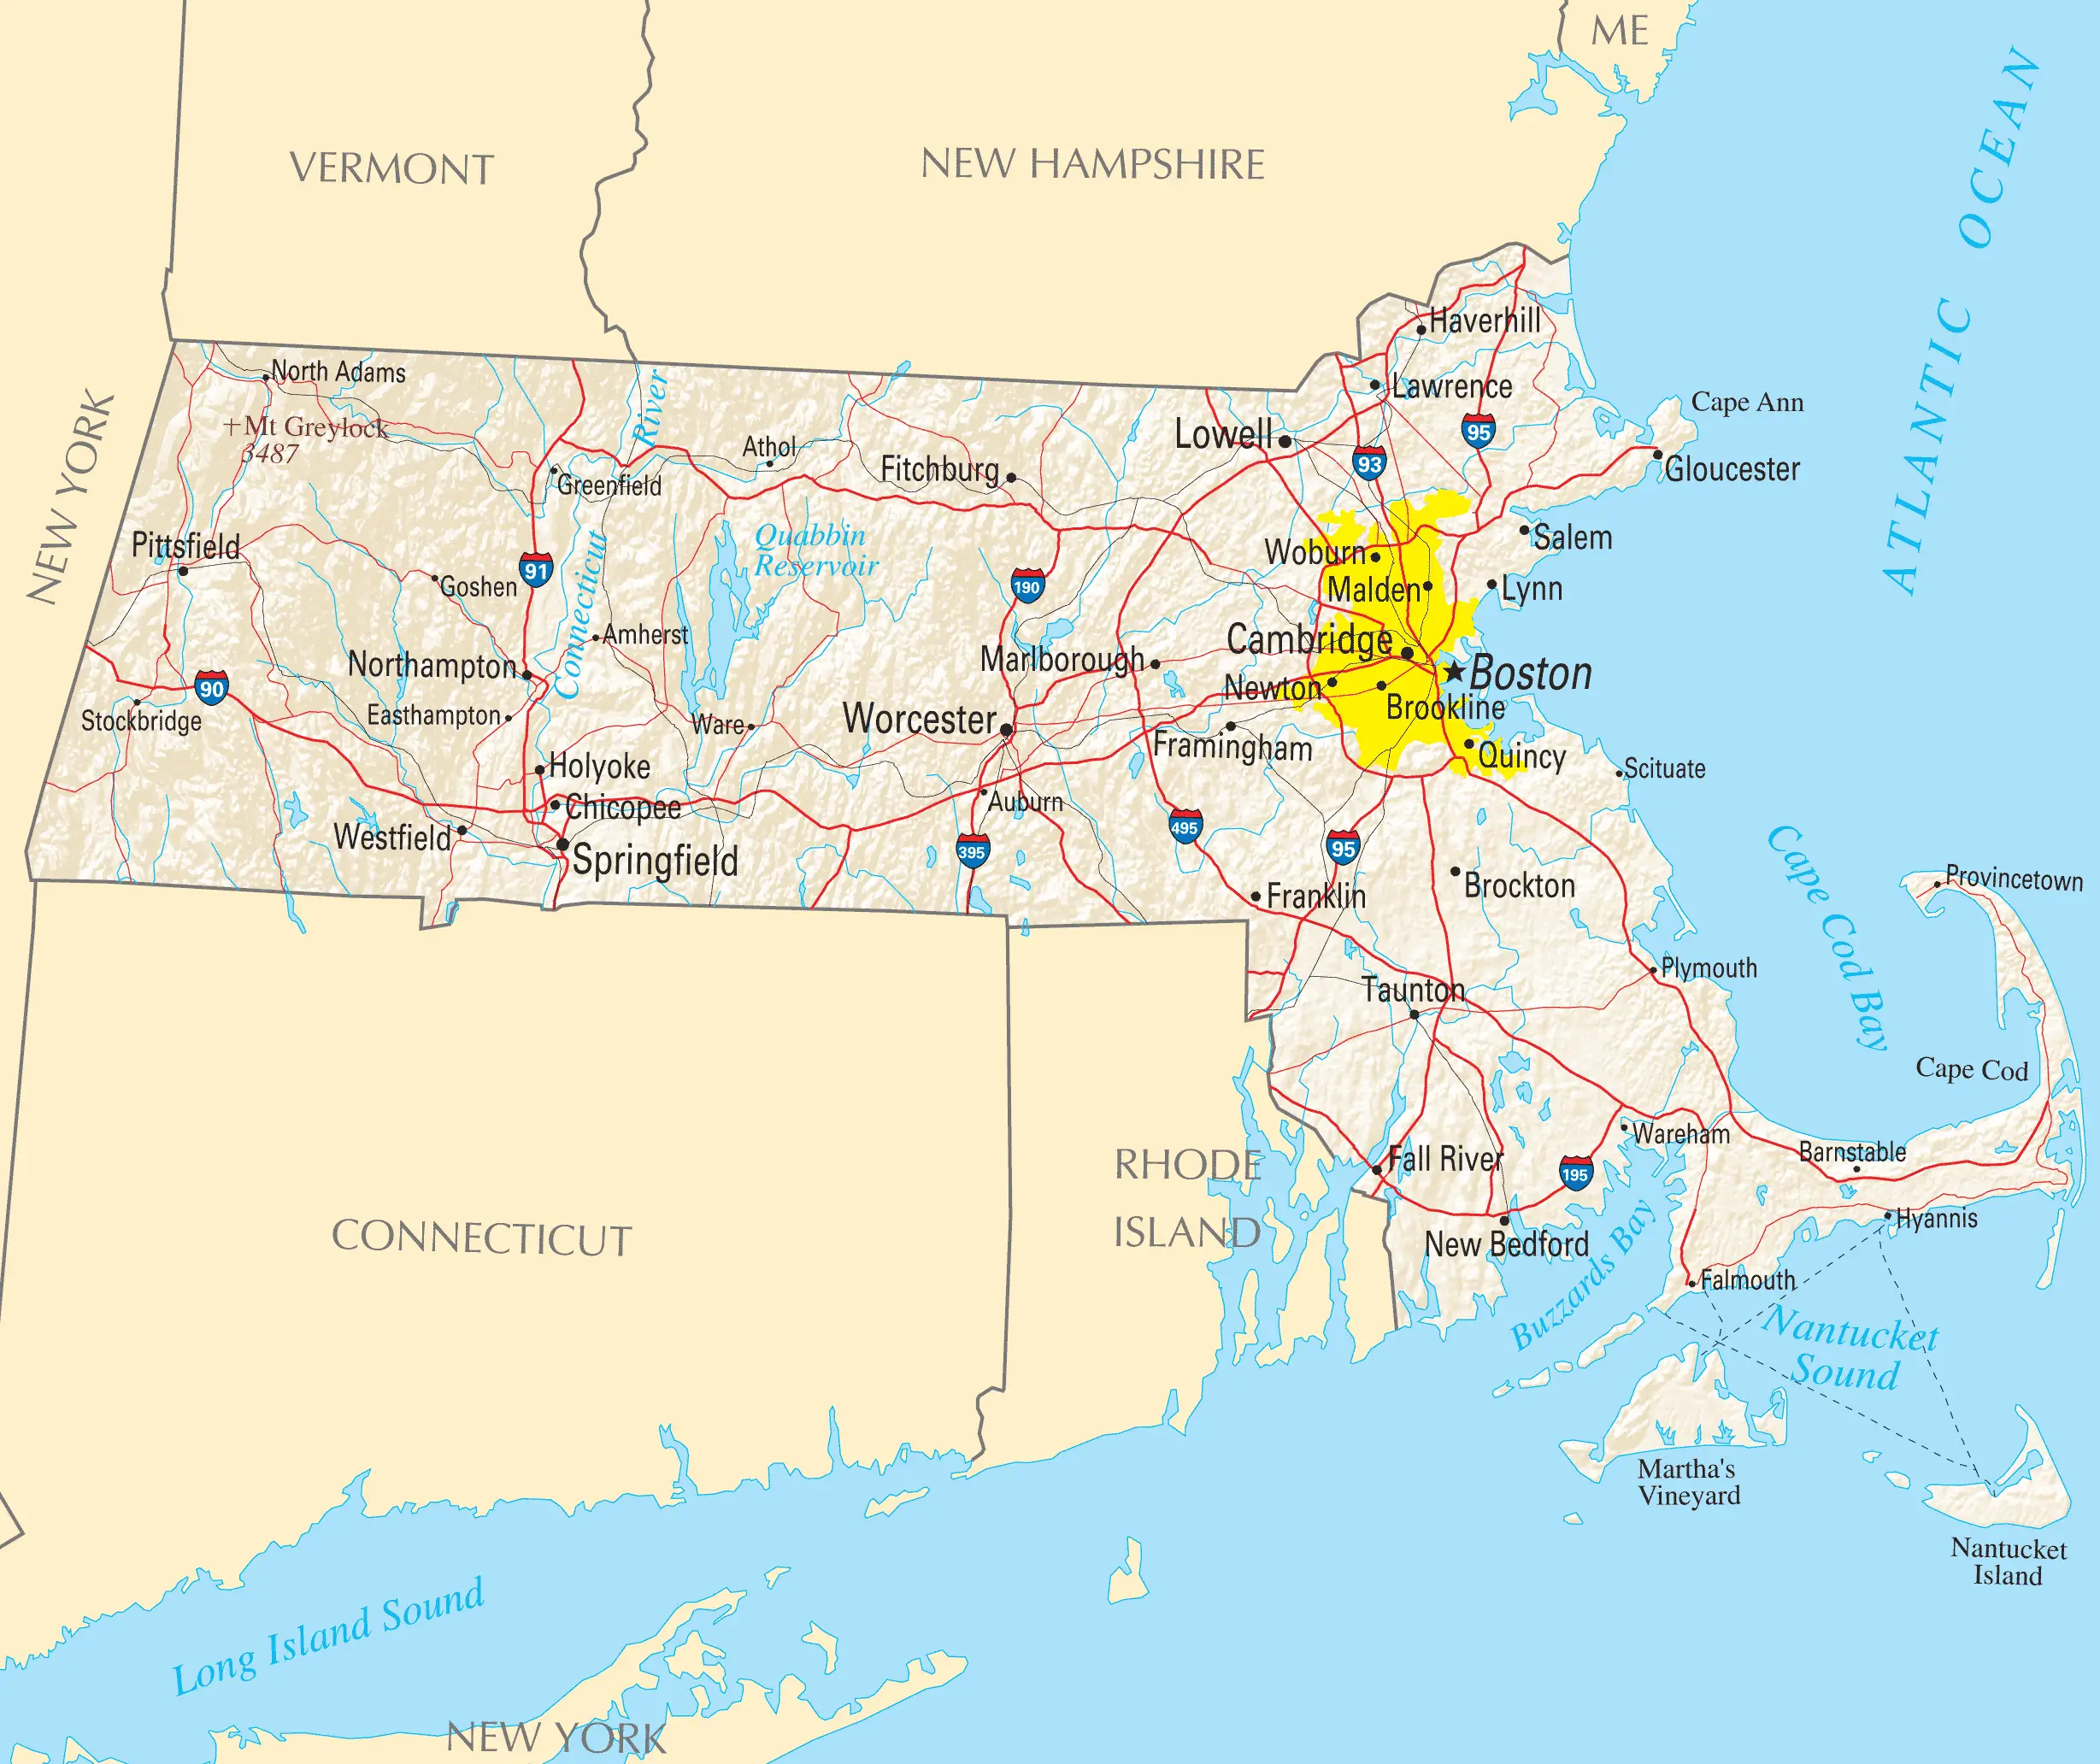 Massachusetts Reference Map - MapSof.net